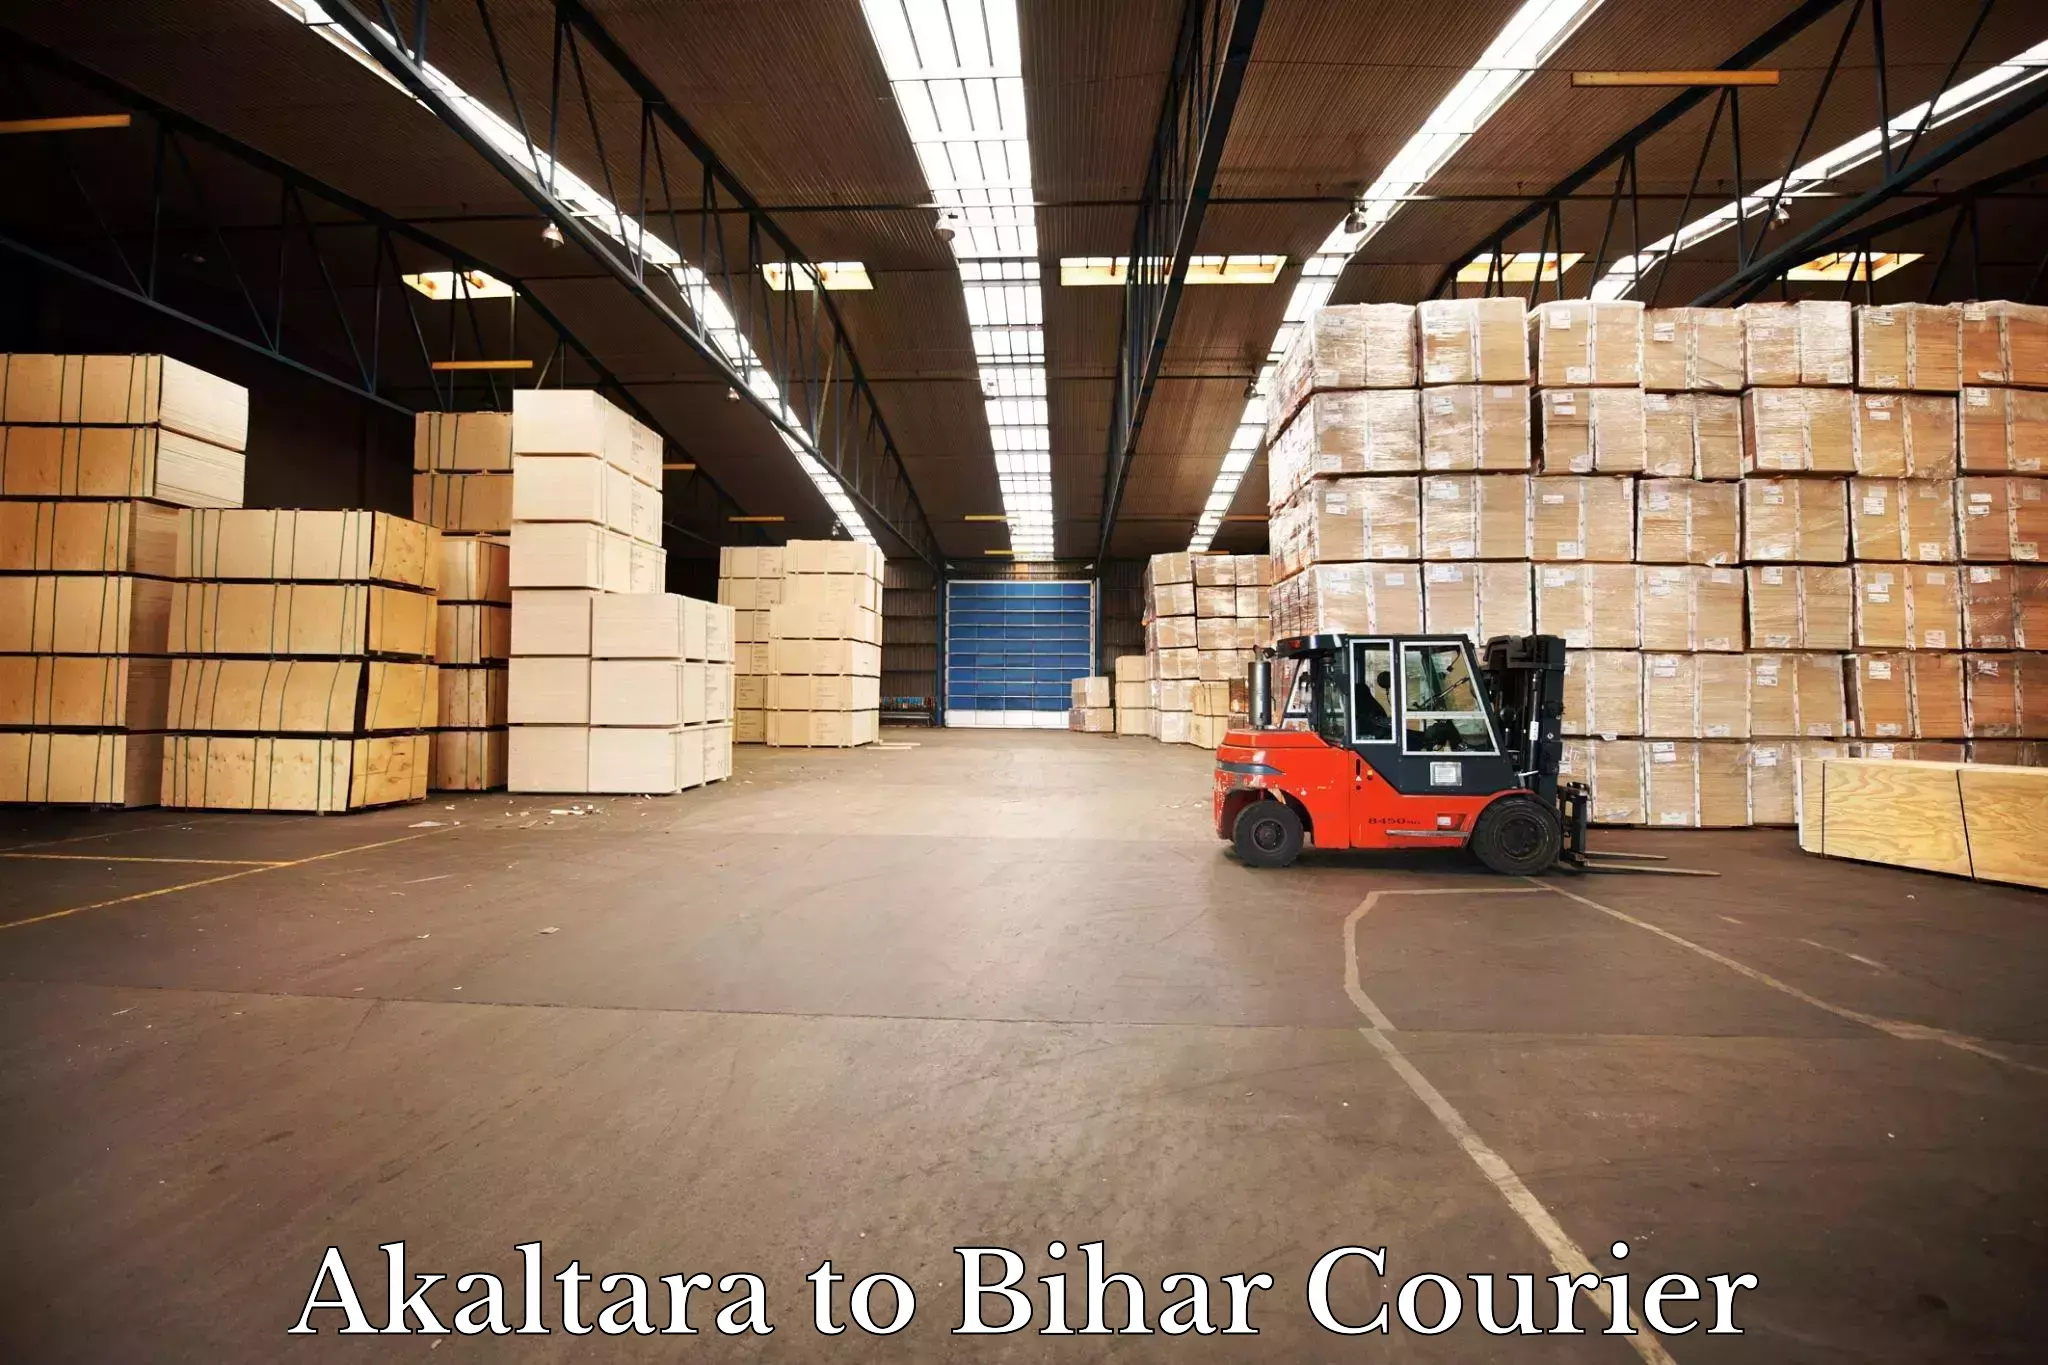 Smart shipping technology Akaltara to Sheonar